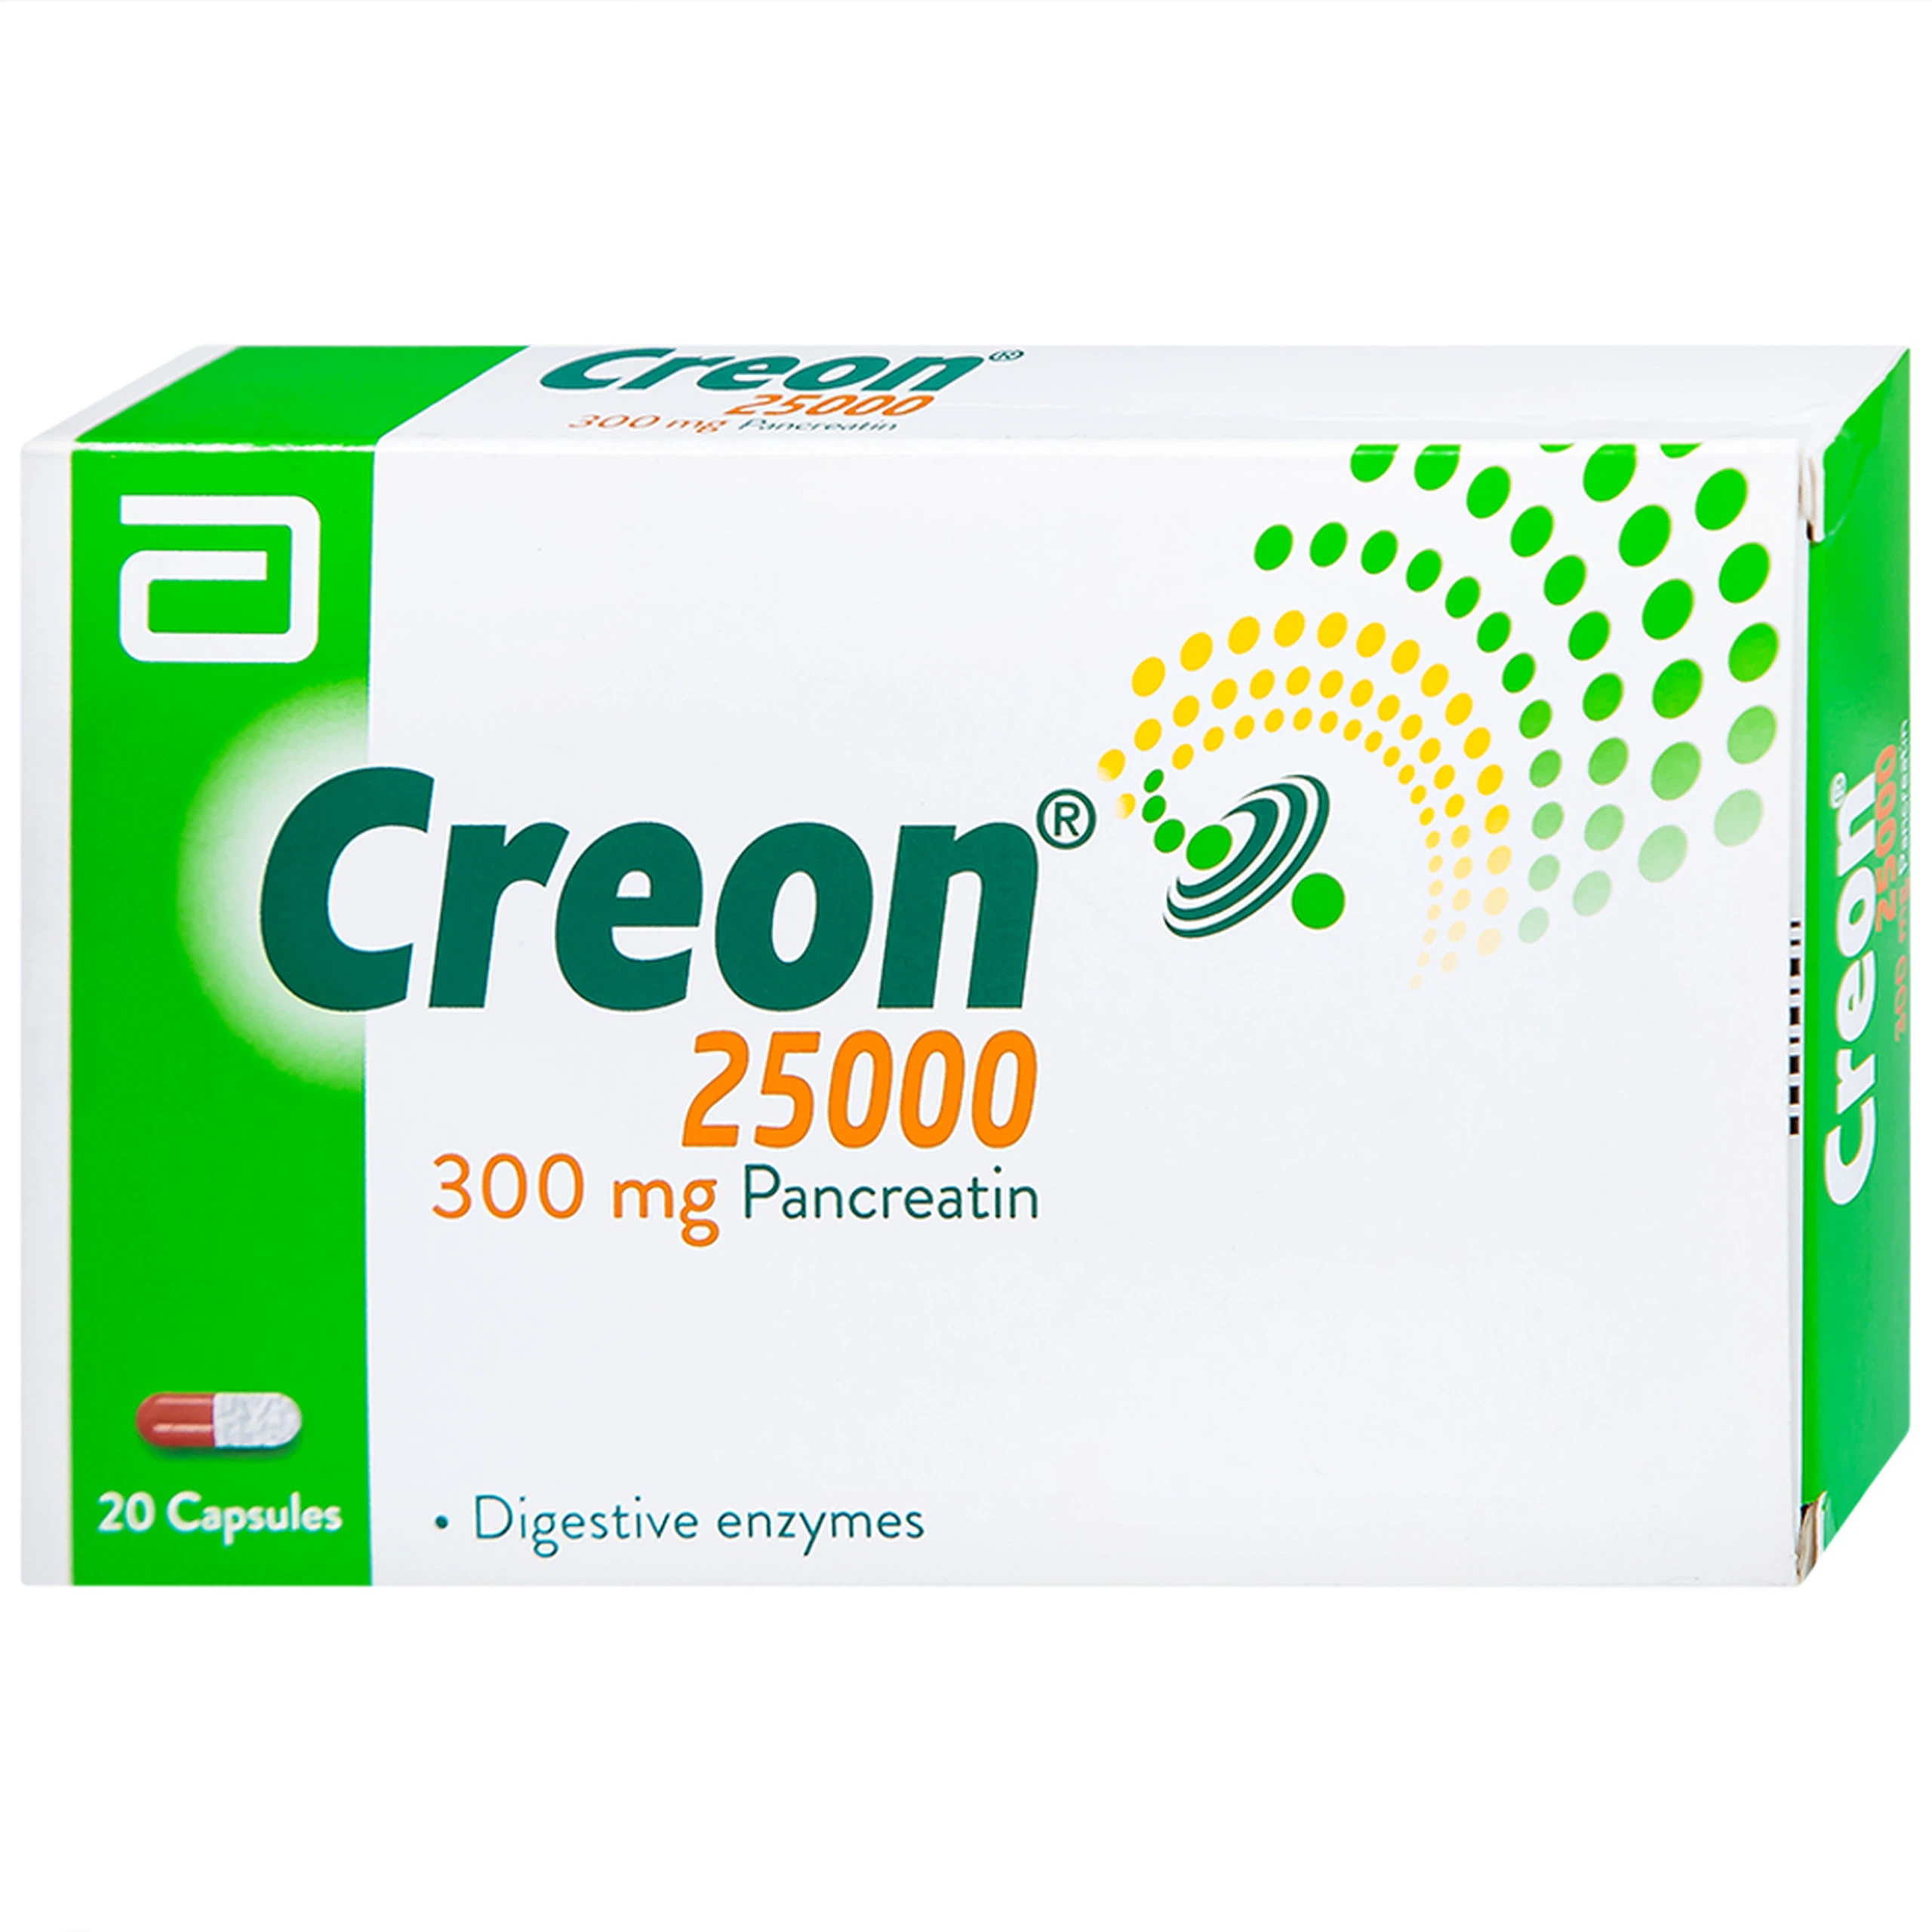 Thuốc Creon 25000 Abbott điều trị thiểu năng tụy ngoại tiết (20 viên)